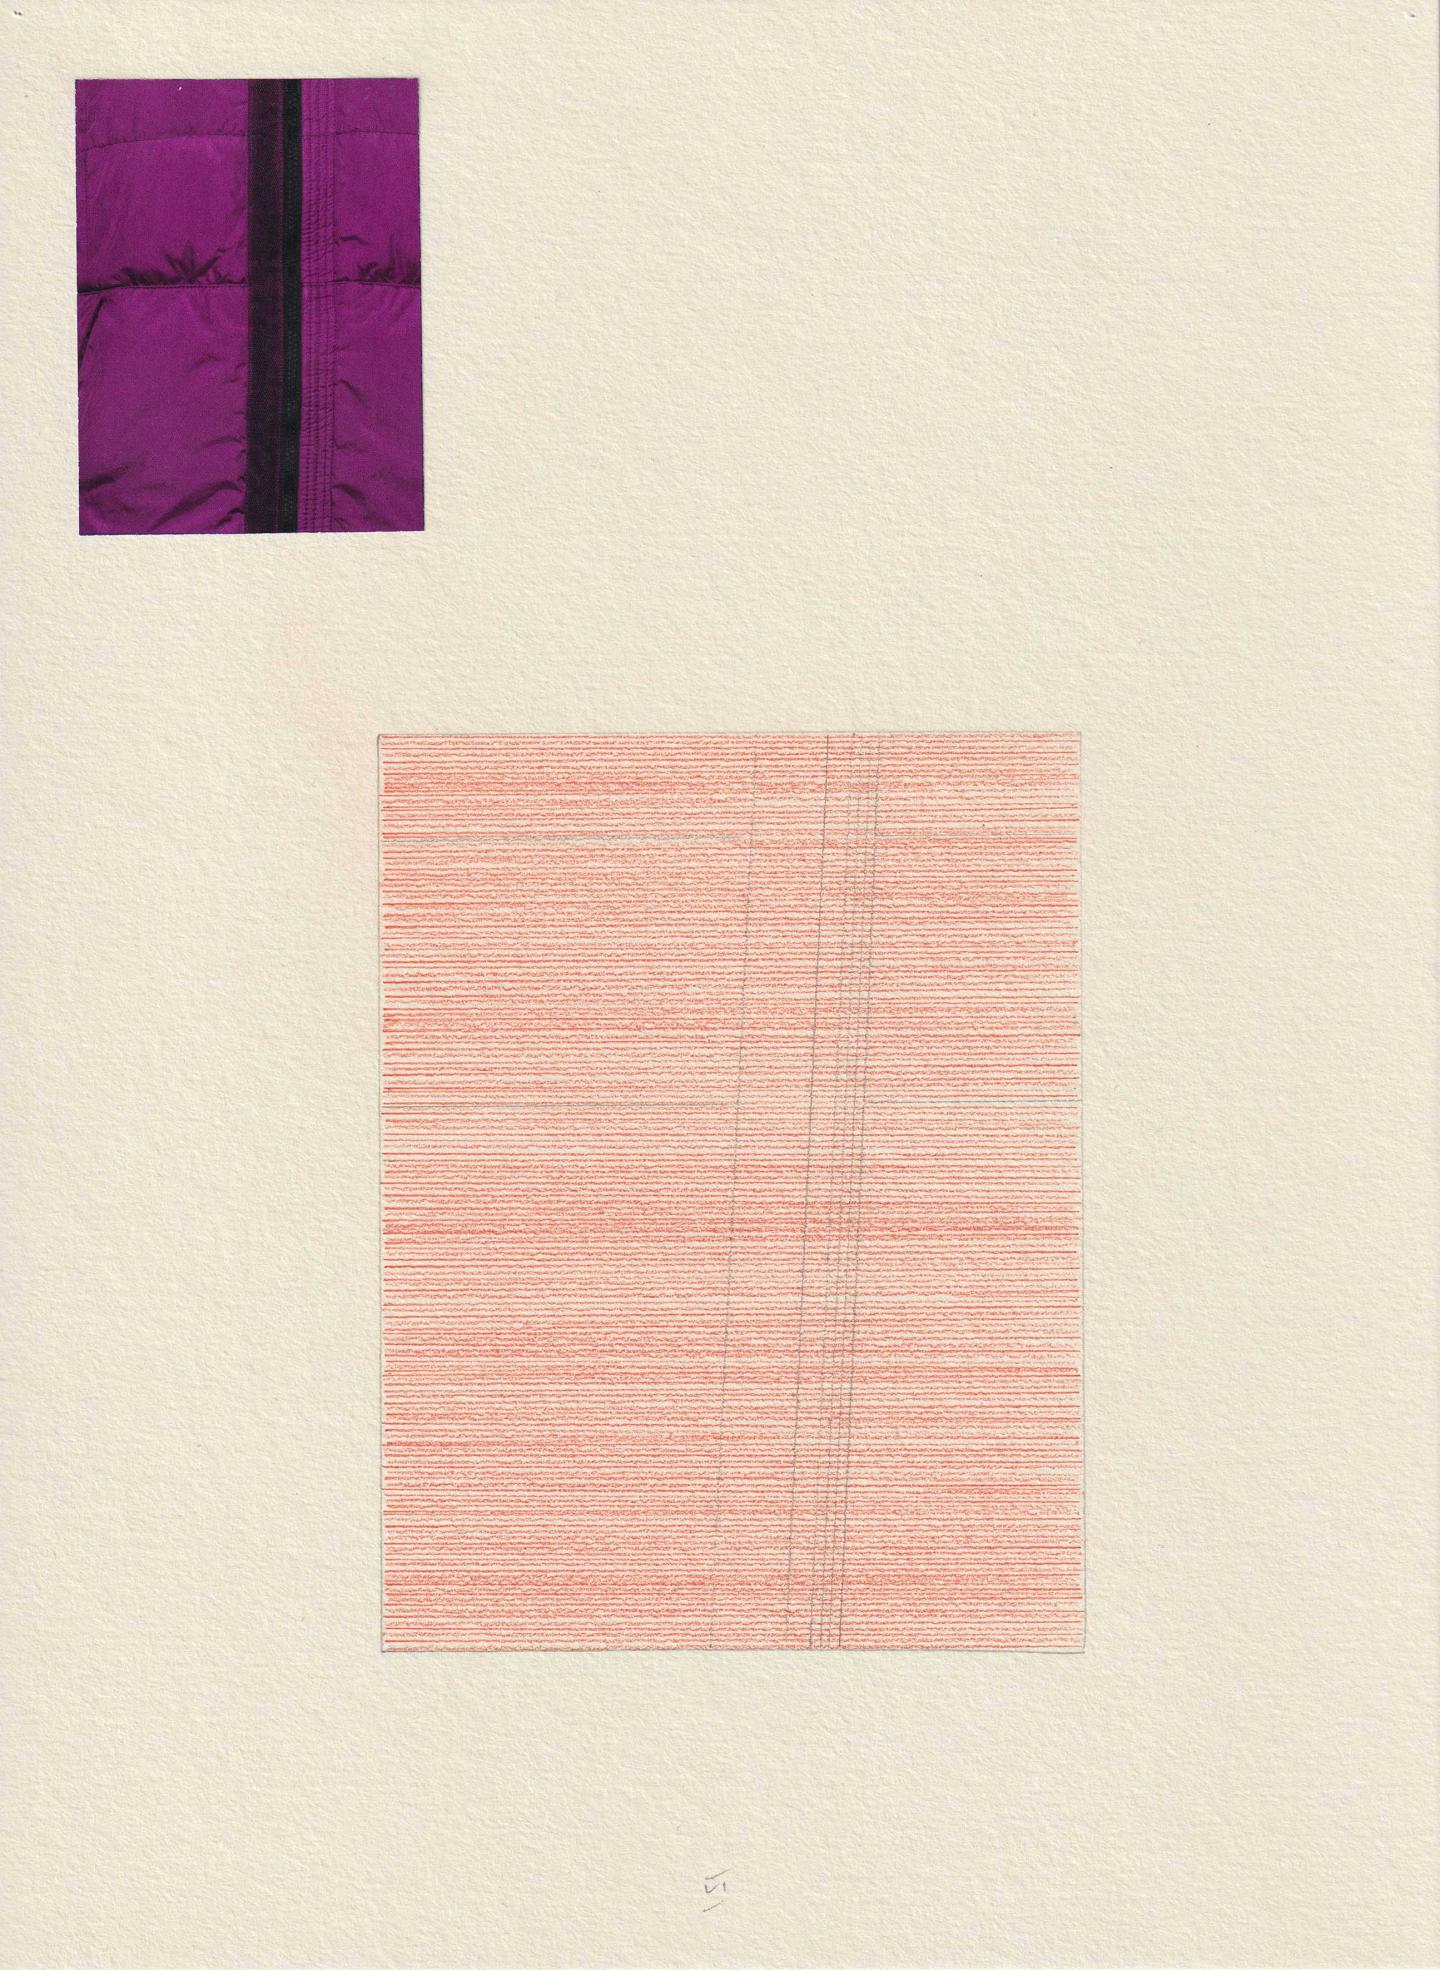 Jean-Luc Manz, Chaos et plaisirs, VI, 2019, pencil on paper , 28 x 21 cm, Galerie Skopia